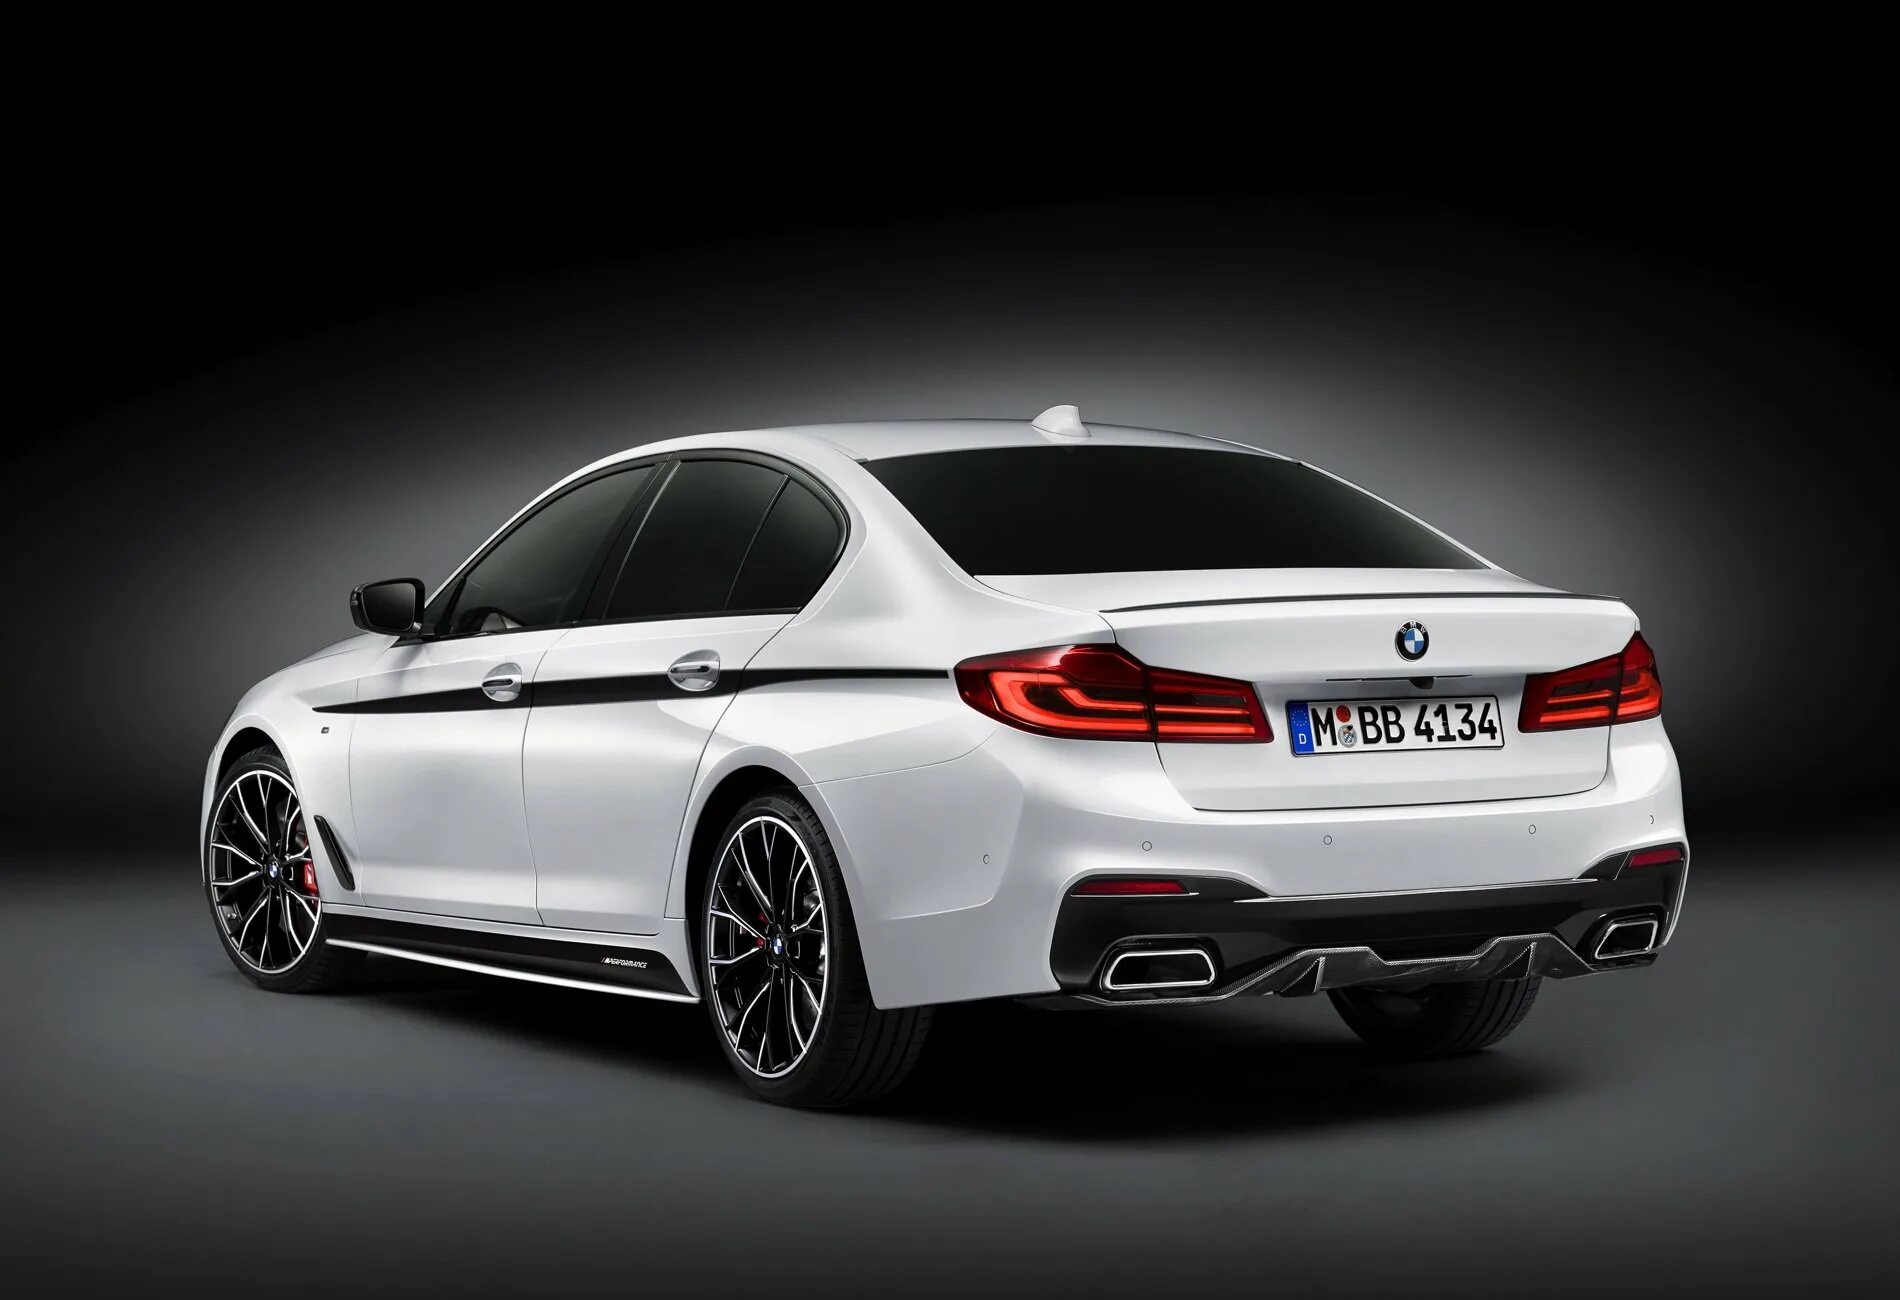 G performance. BMW g30 m Performance. BMW g31 m Performance. BMW g30 универсал. BMW 5 g30 универсал.